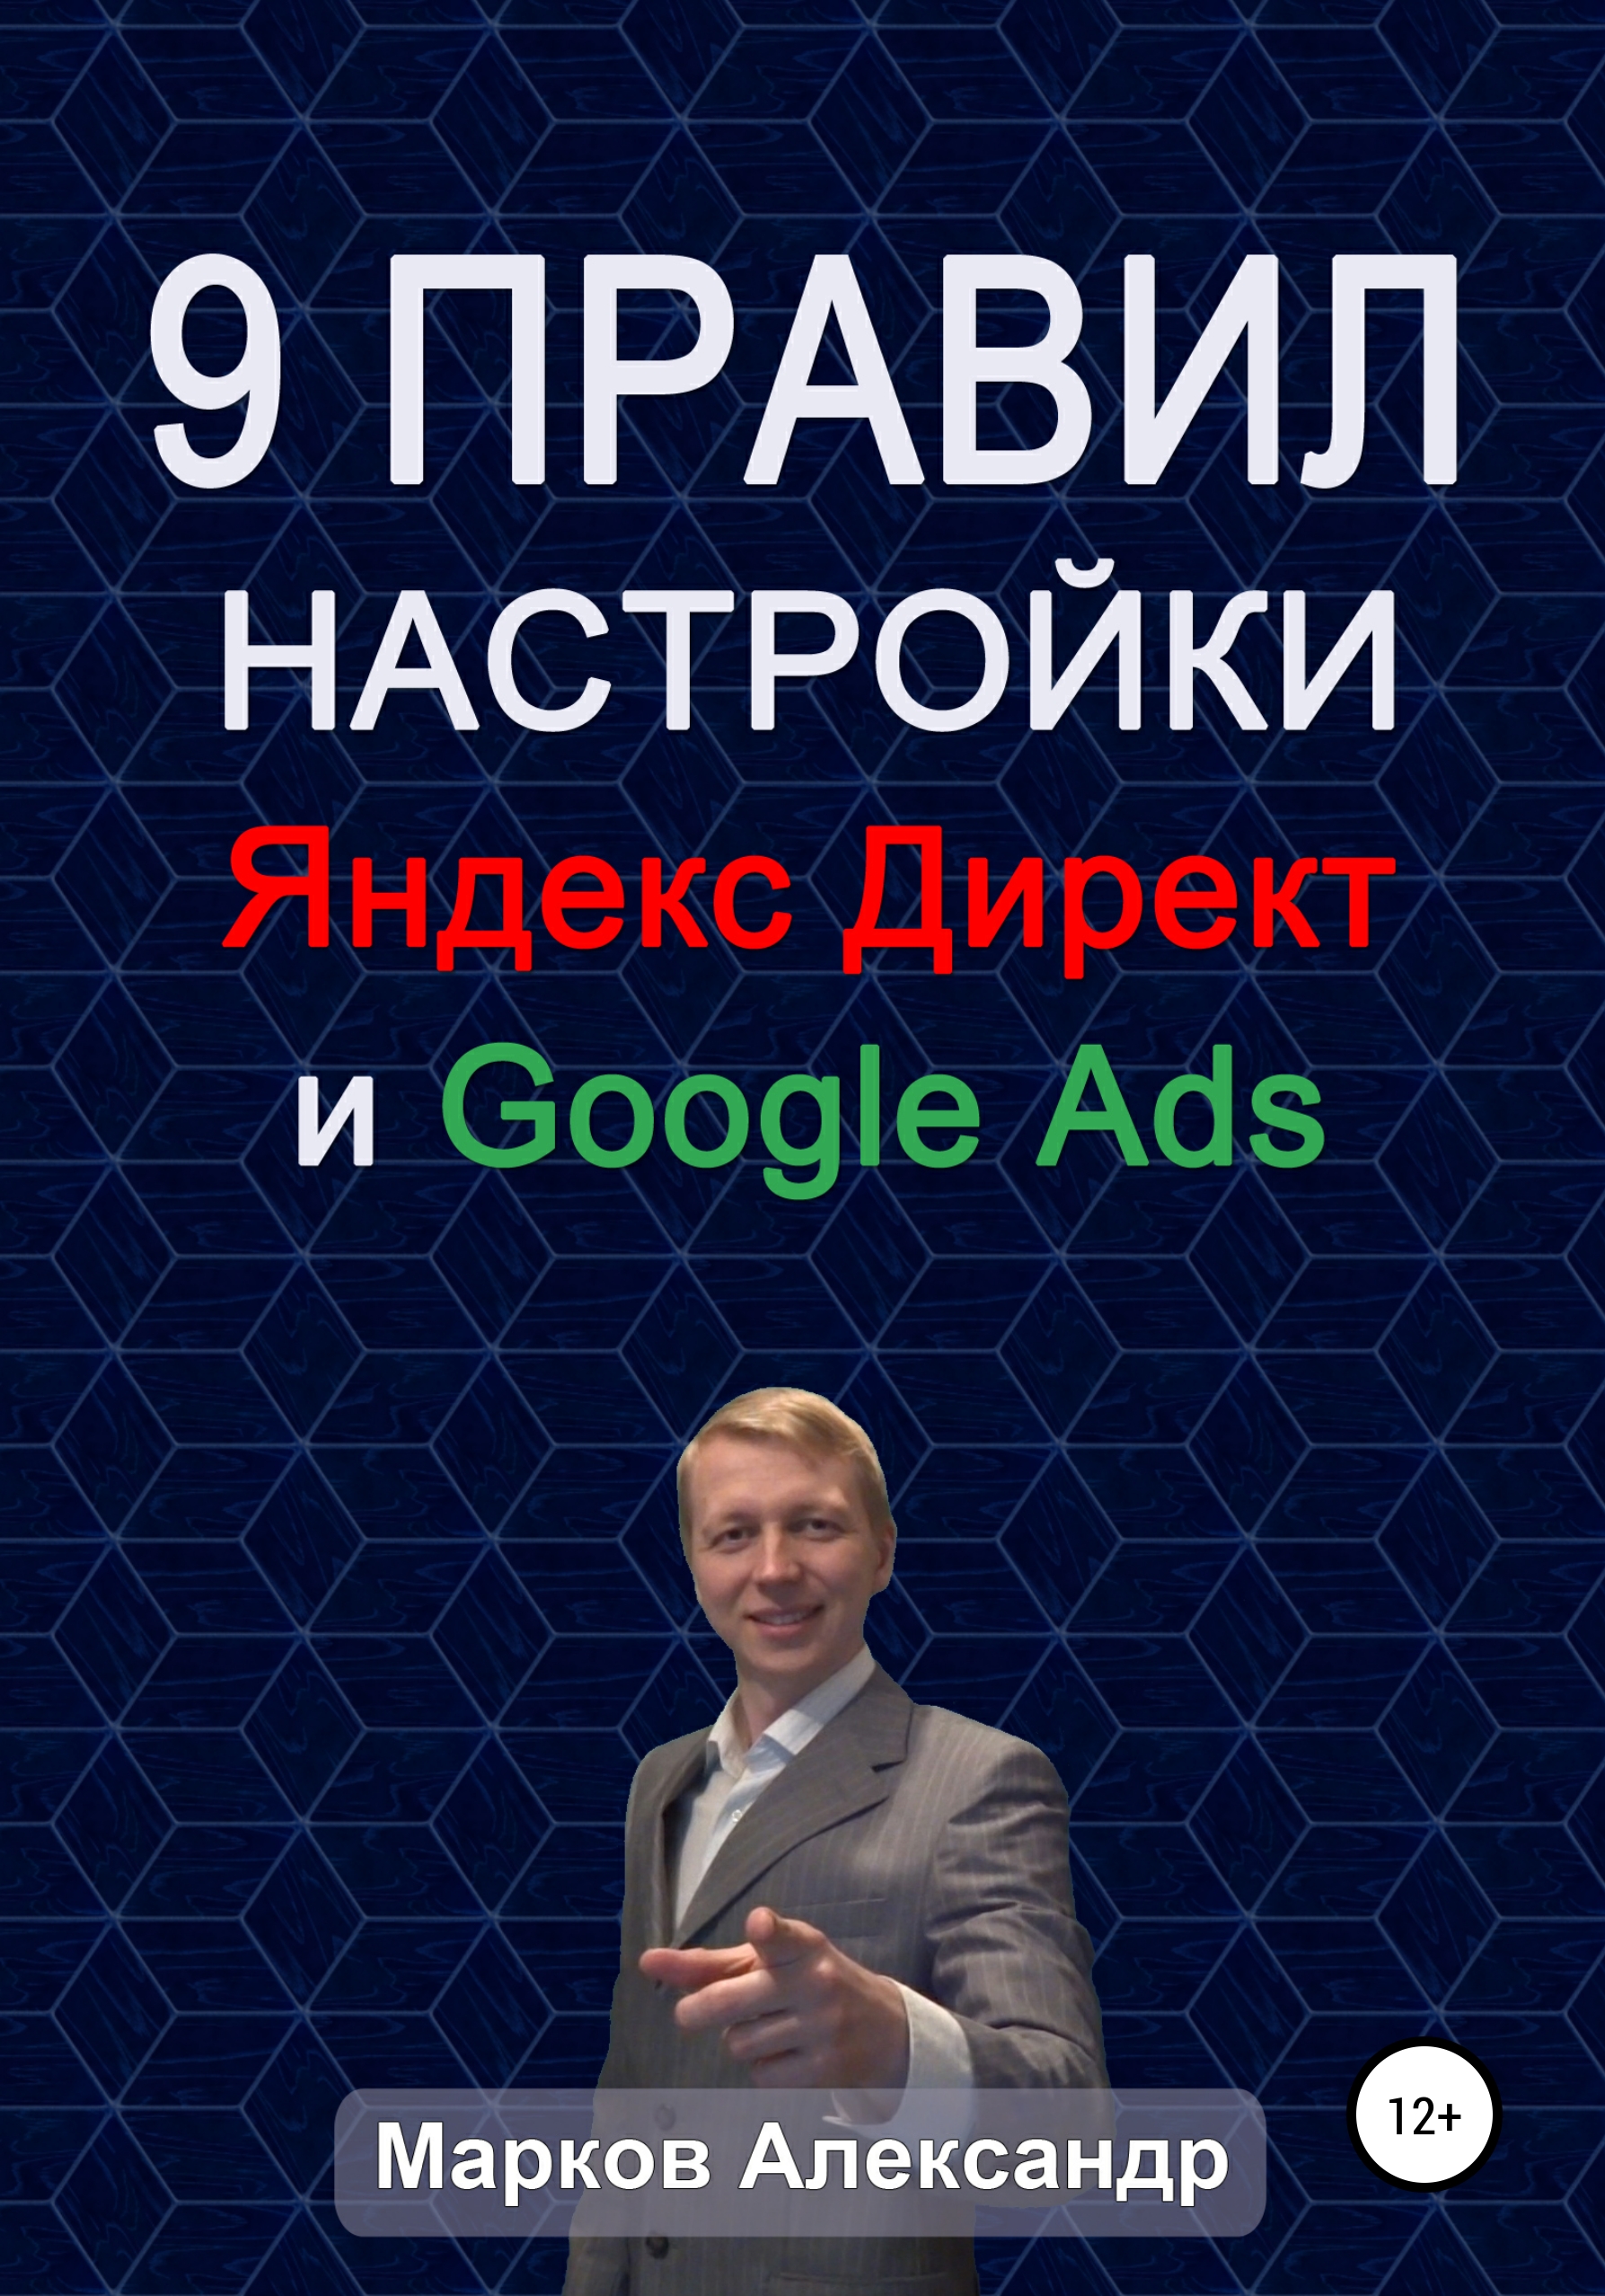 Книга 9 правил настройки эффективного Яндекс директ и Google ads из серии , созданная Александр Марков, может относится к жанру Маркетинг, PR, реклама, Маркетинг, PR, реклама, Маркетинг, PR, реклама. Стоимость электронной книги 9 правил настройки эффективного Яндекс директ и Google ads с идентификатором 51182789 составляет 0 руб.